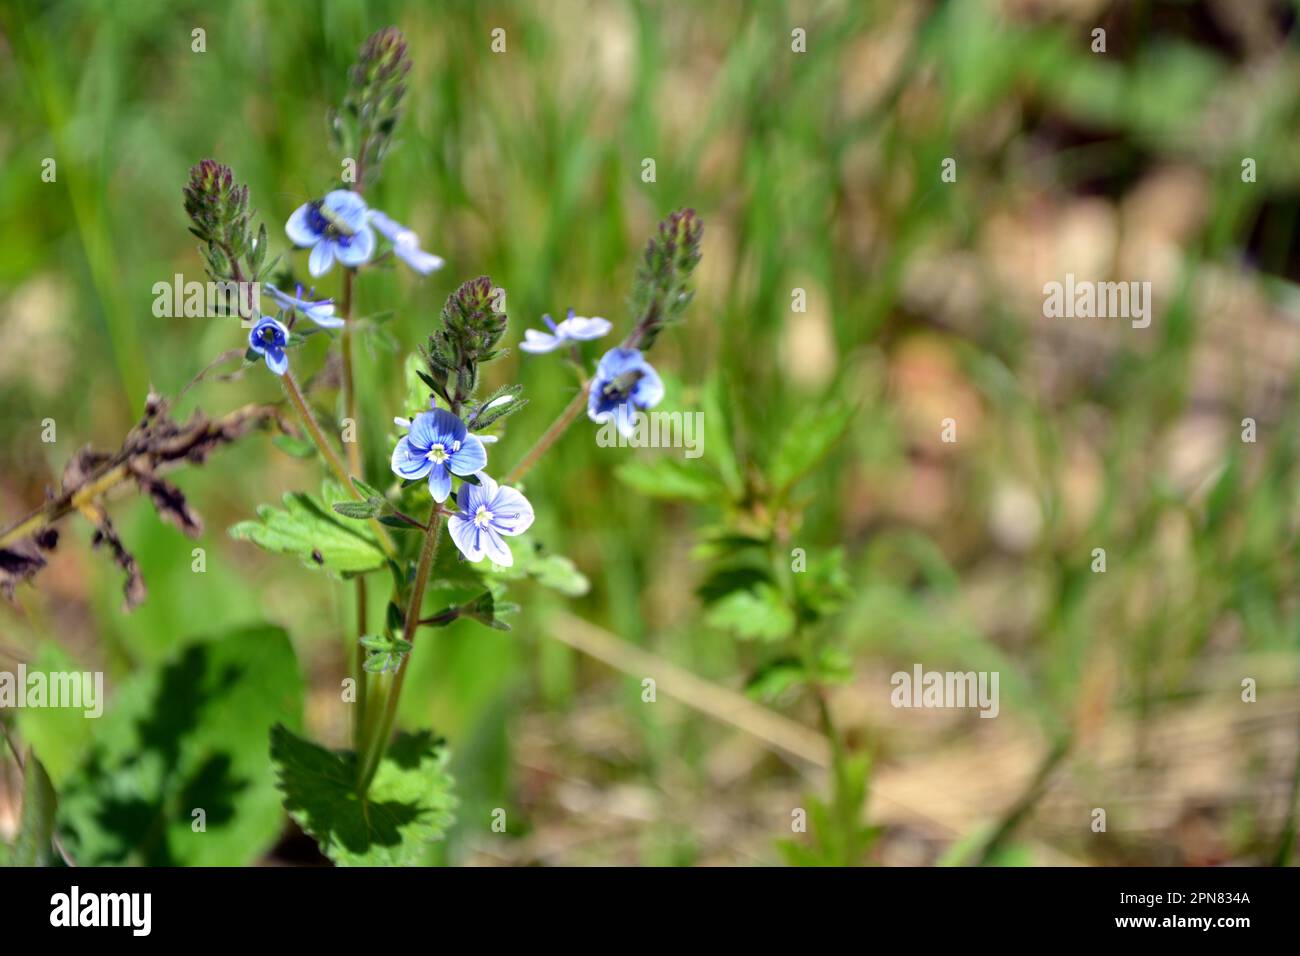 Gros plan des magnifiques fleurs bleues de germander speedwell (Veronica chamaedrys). Image horizontale avec mise au point sélective, fond vert flou a Banque D'Images